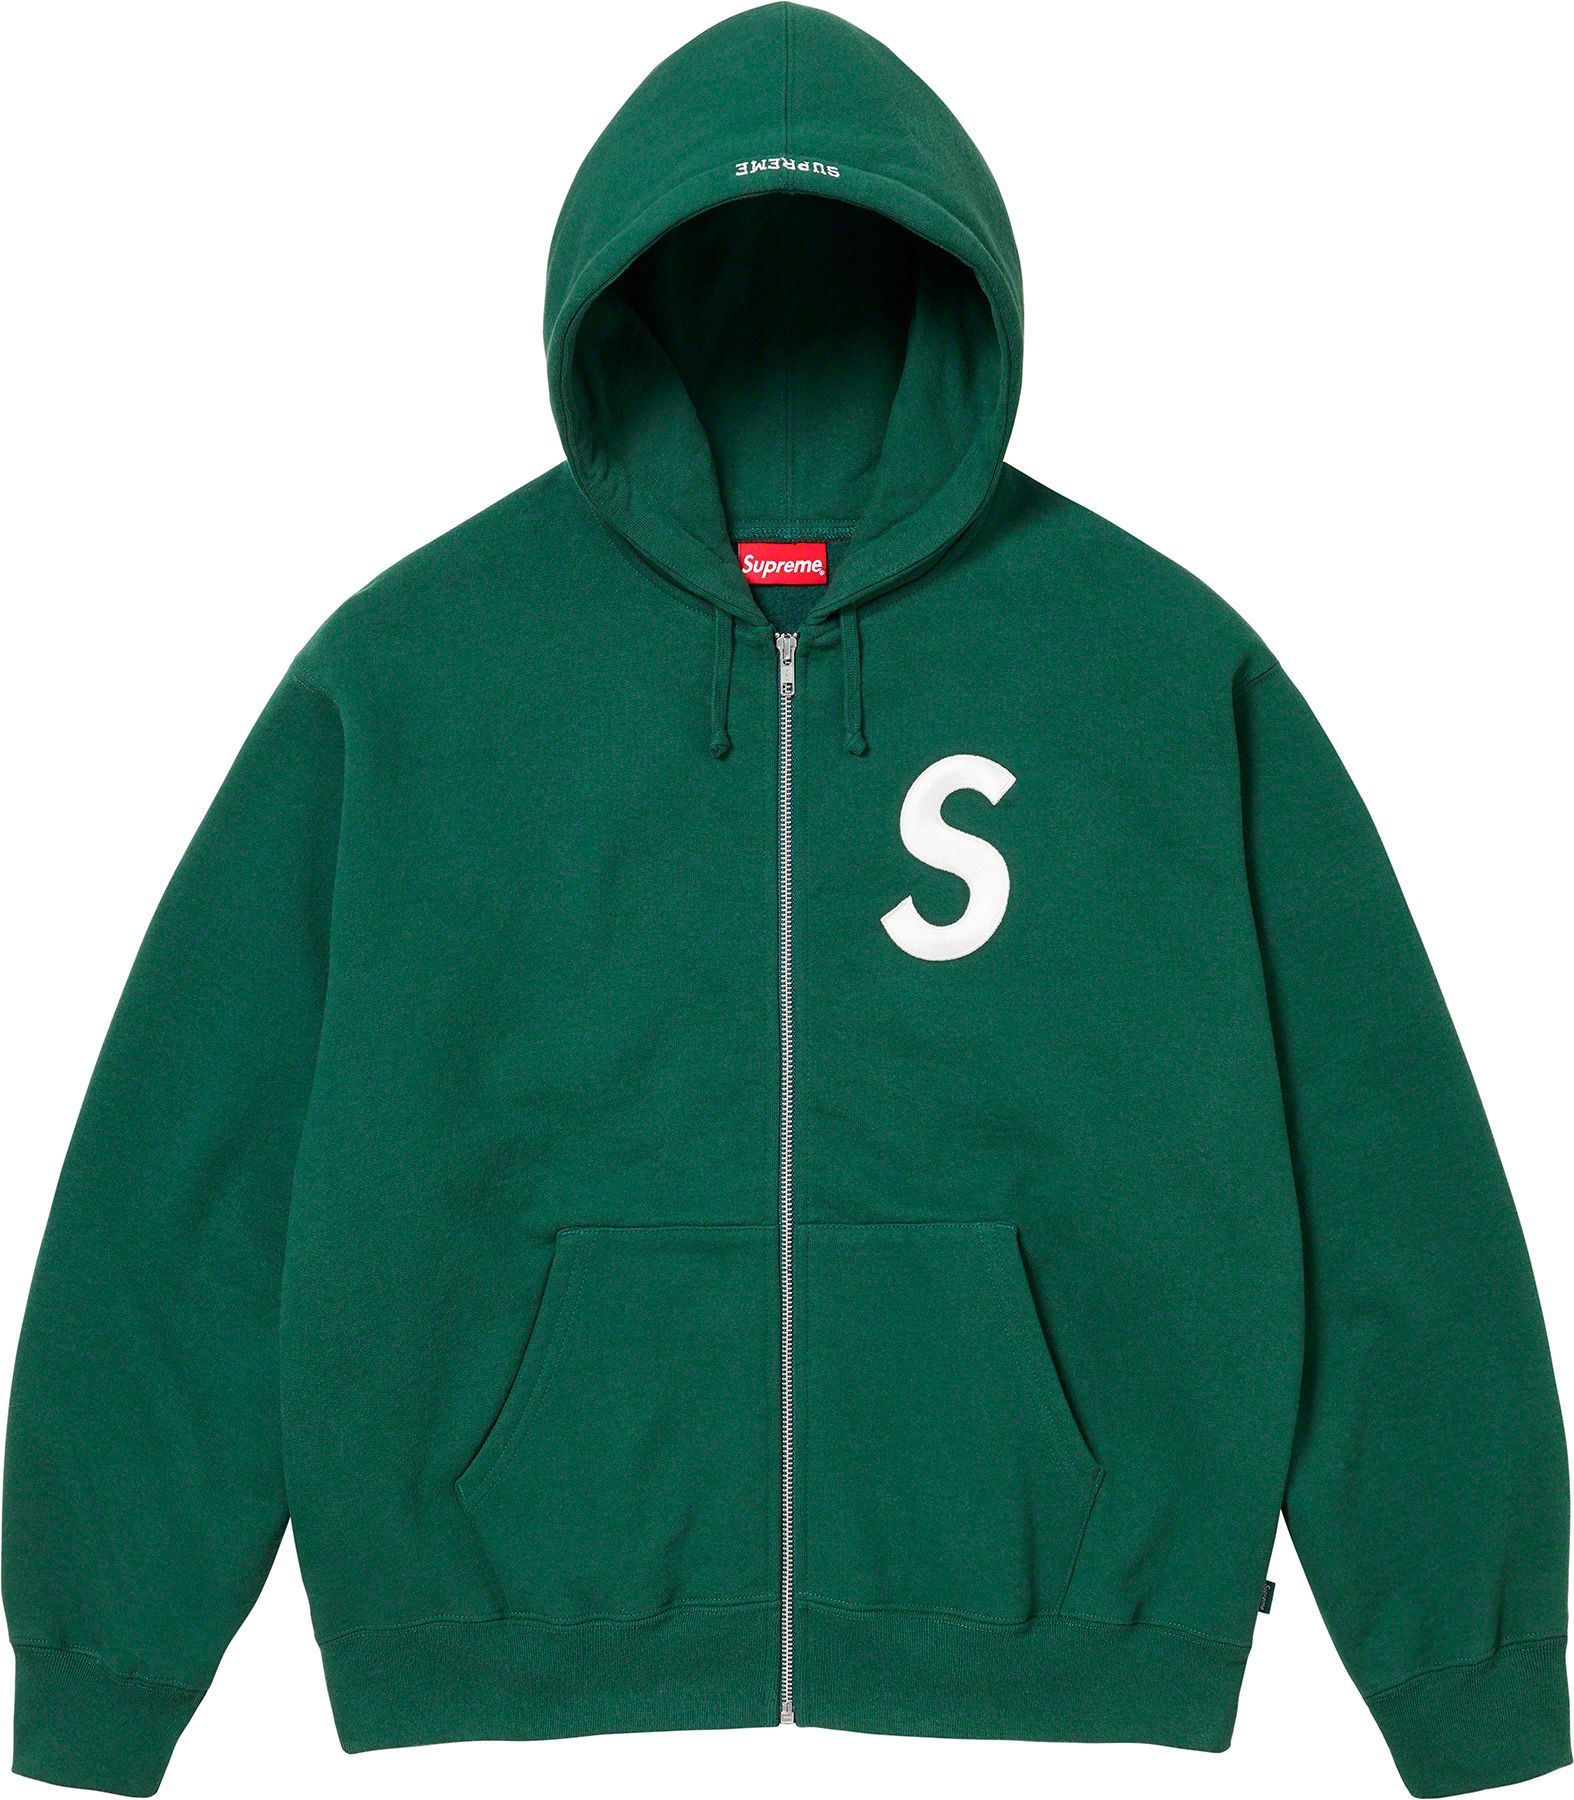 supreme s logo hooded sweatshirt - パーカー